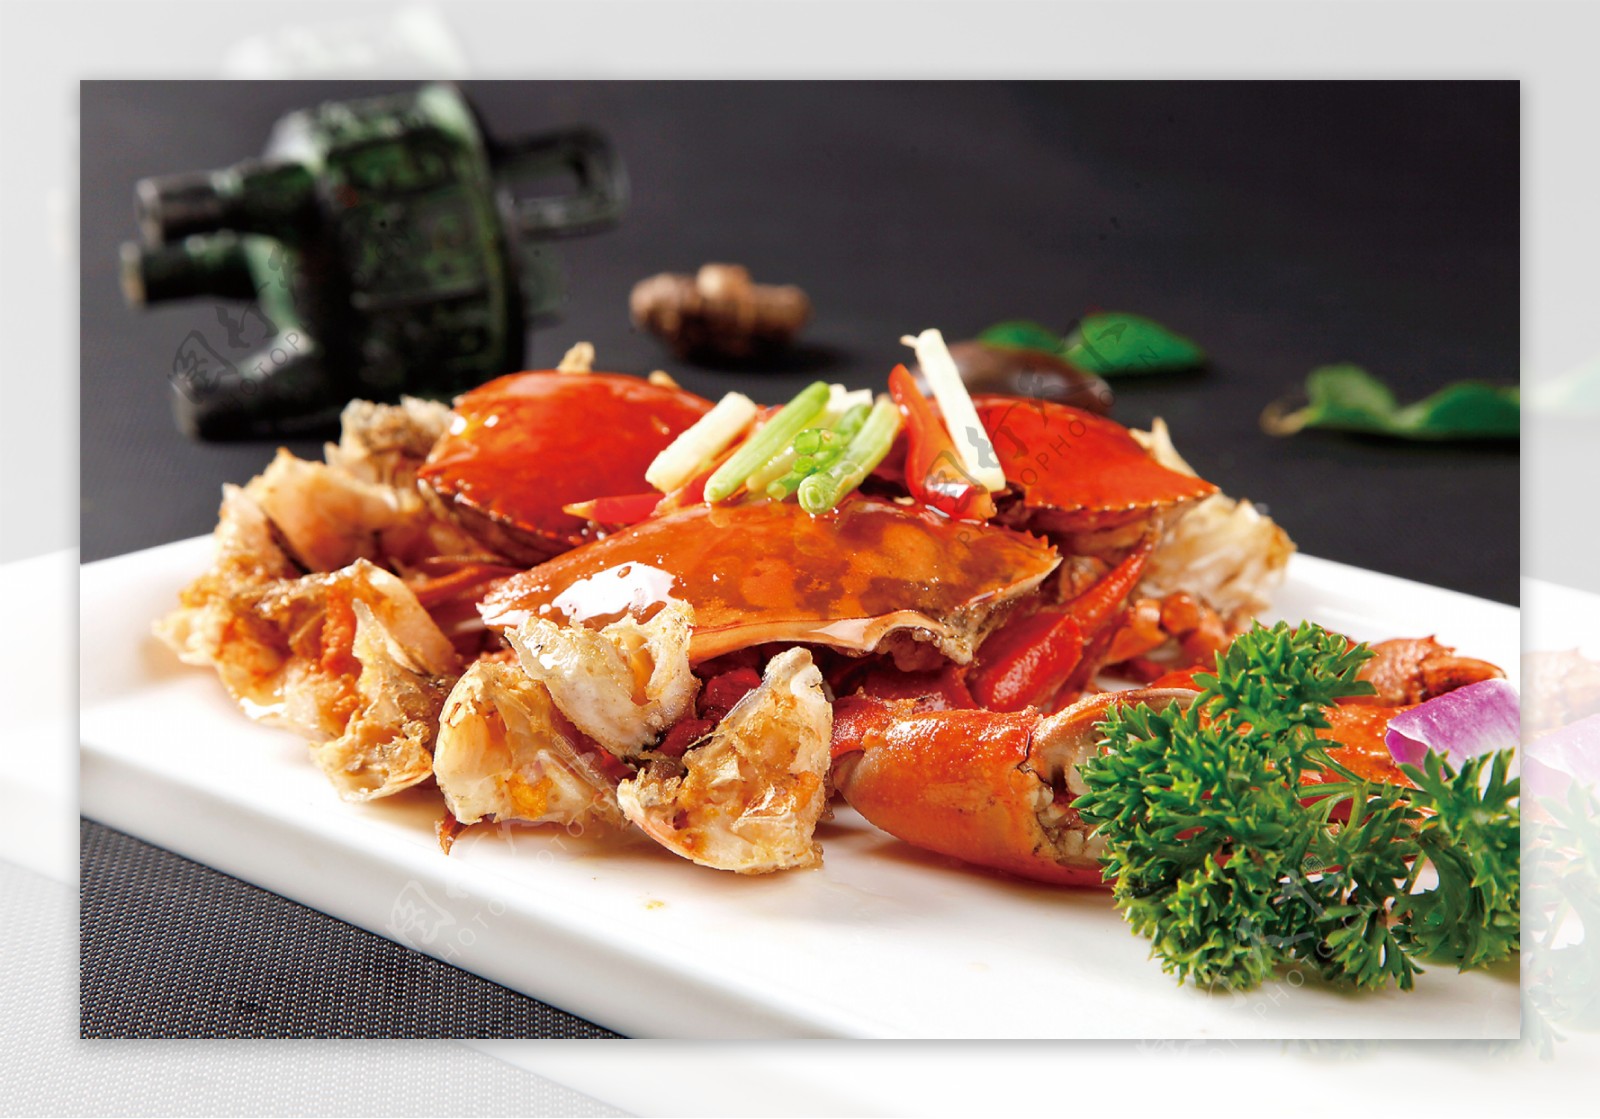 晶華端出斯里蘭卡巨蟹「粵式品蟹宴」展現當令美味 - Taster 美食加